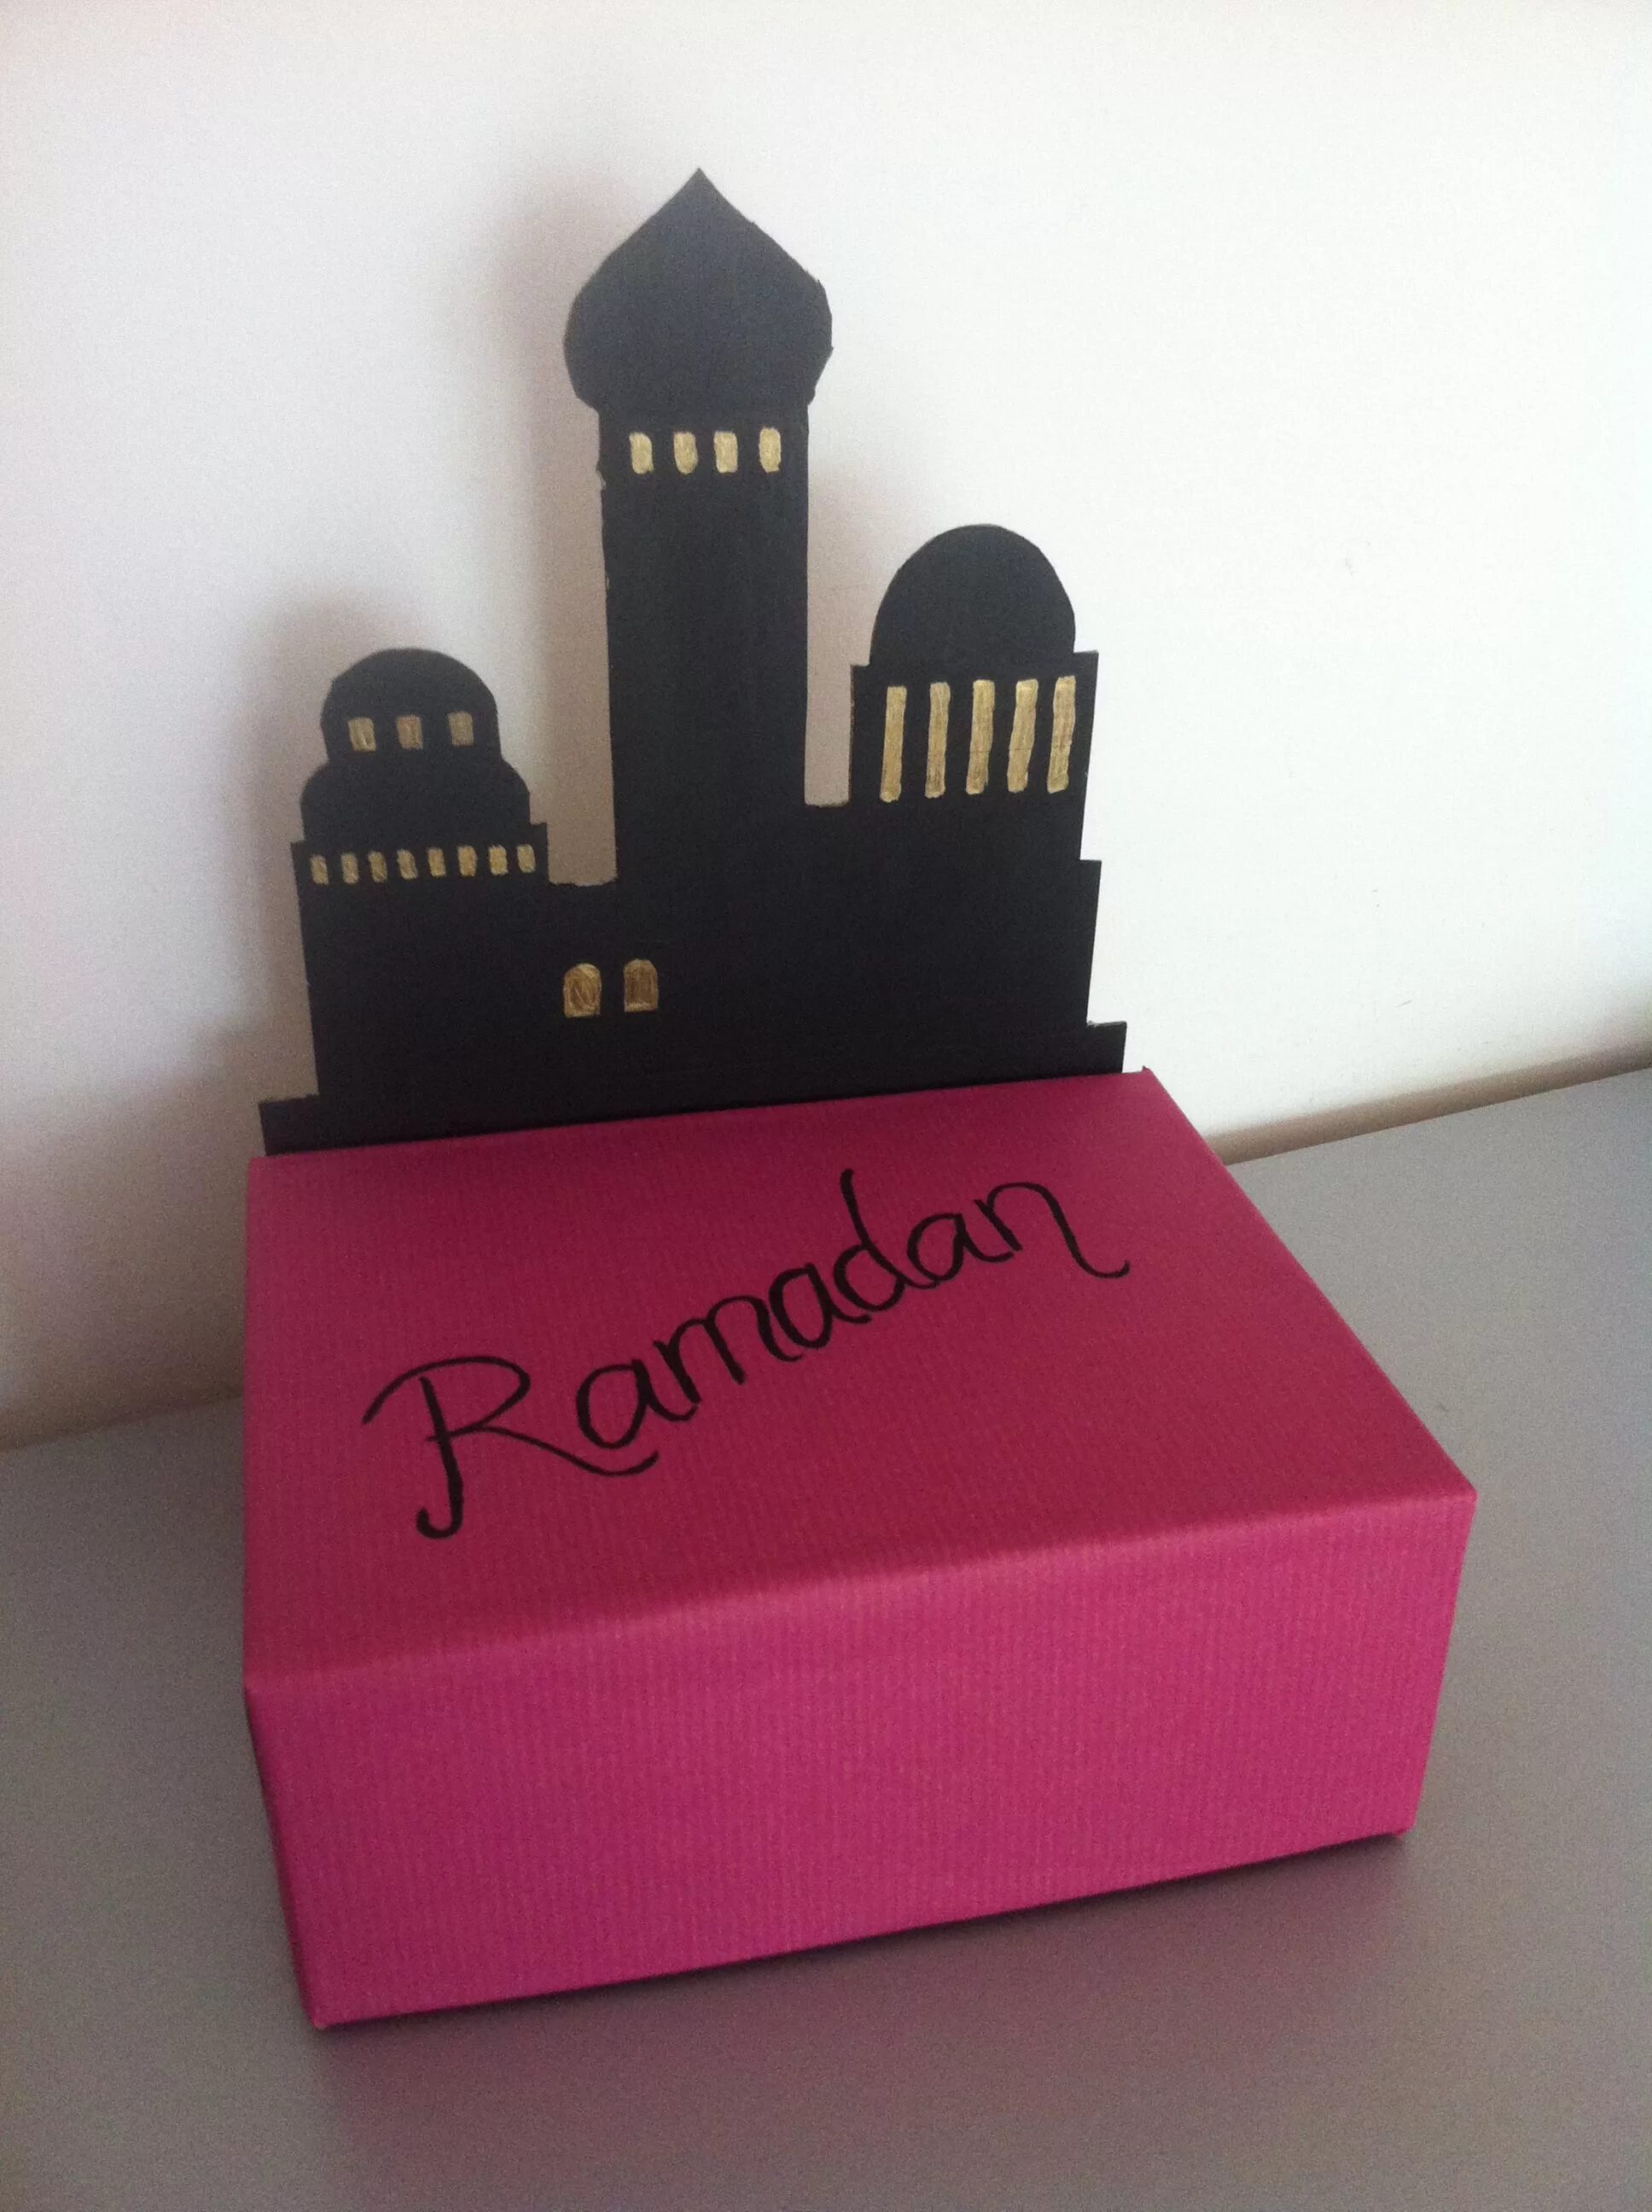 Что дарят на рамадан. Подарки на Рамадан детям. Подарки оригинальные на Рамадан. Идеи подарков на Рамадан. Поделки на Рамадан для детей.